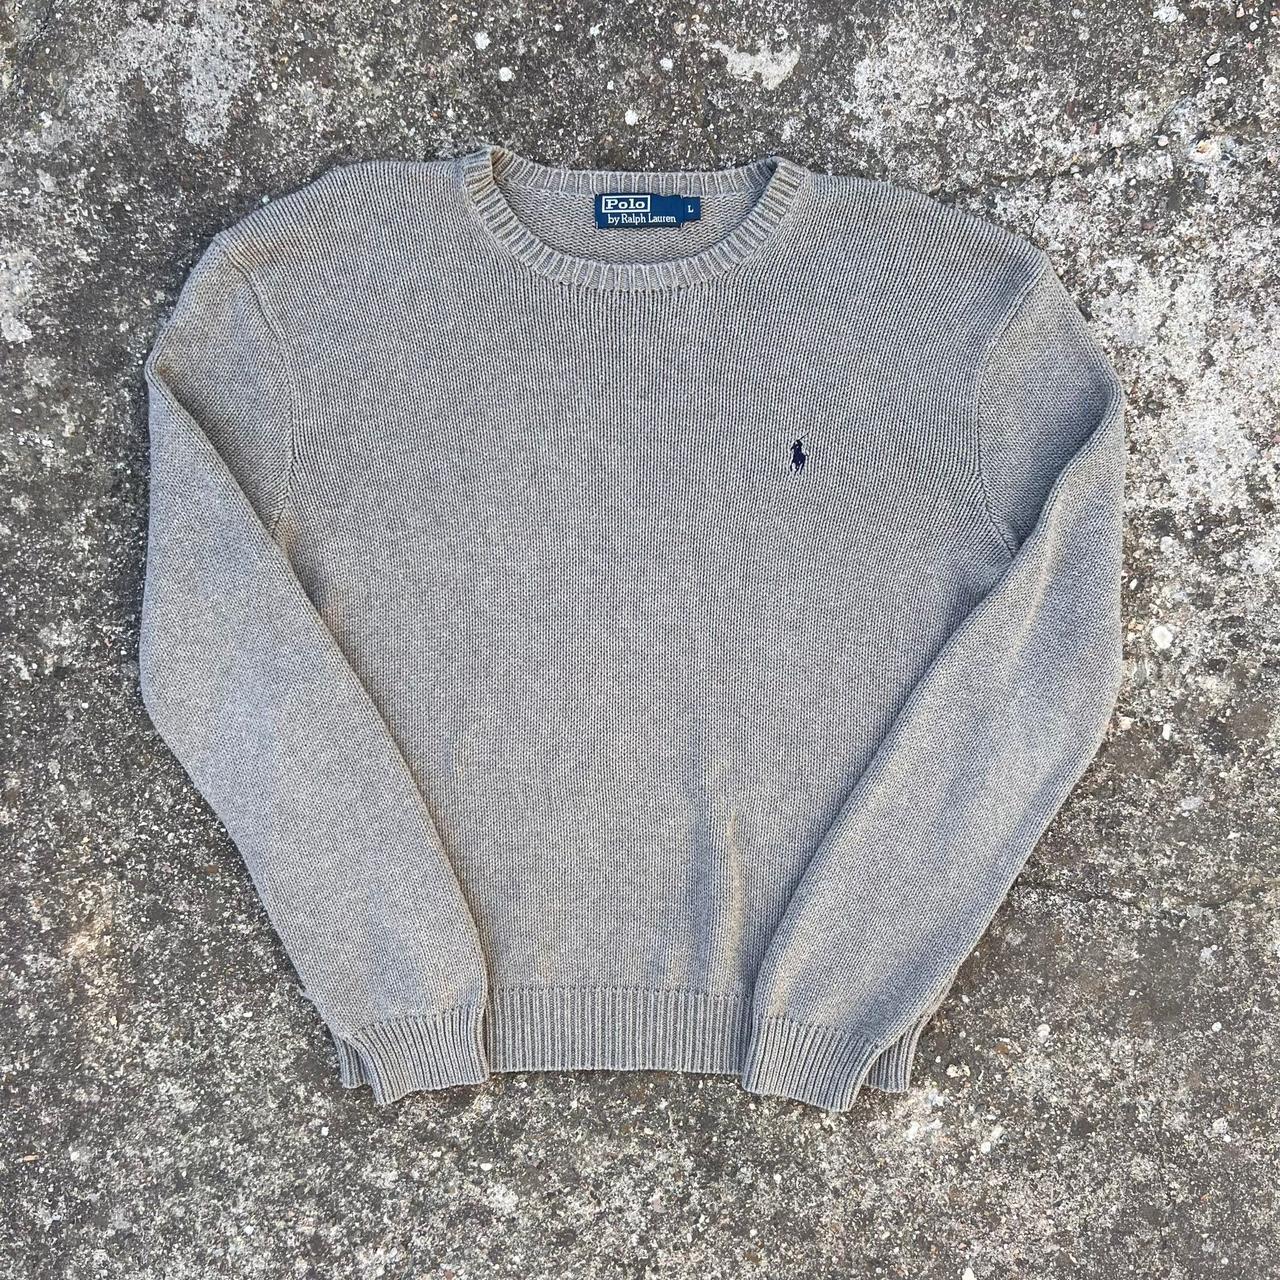 Ralph Lauren Vintage 90s Heavy Sweater Jumper Grey... - Depop